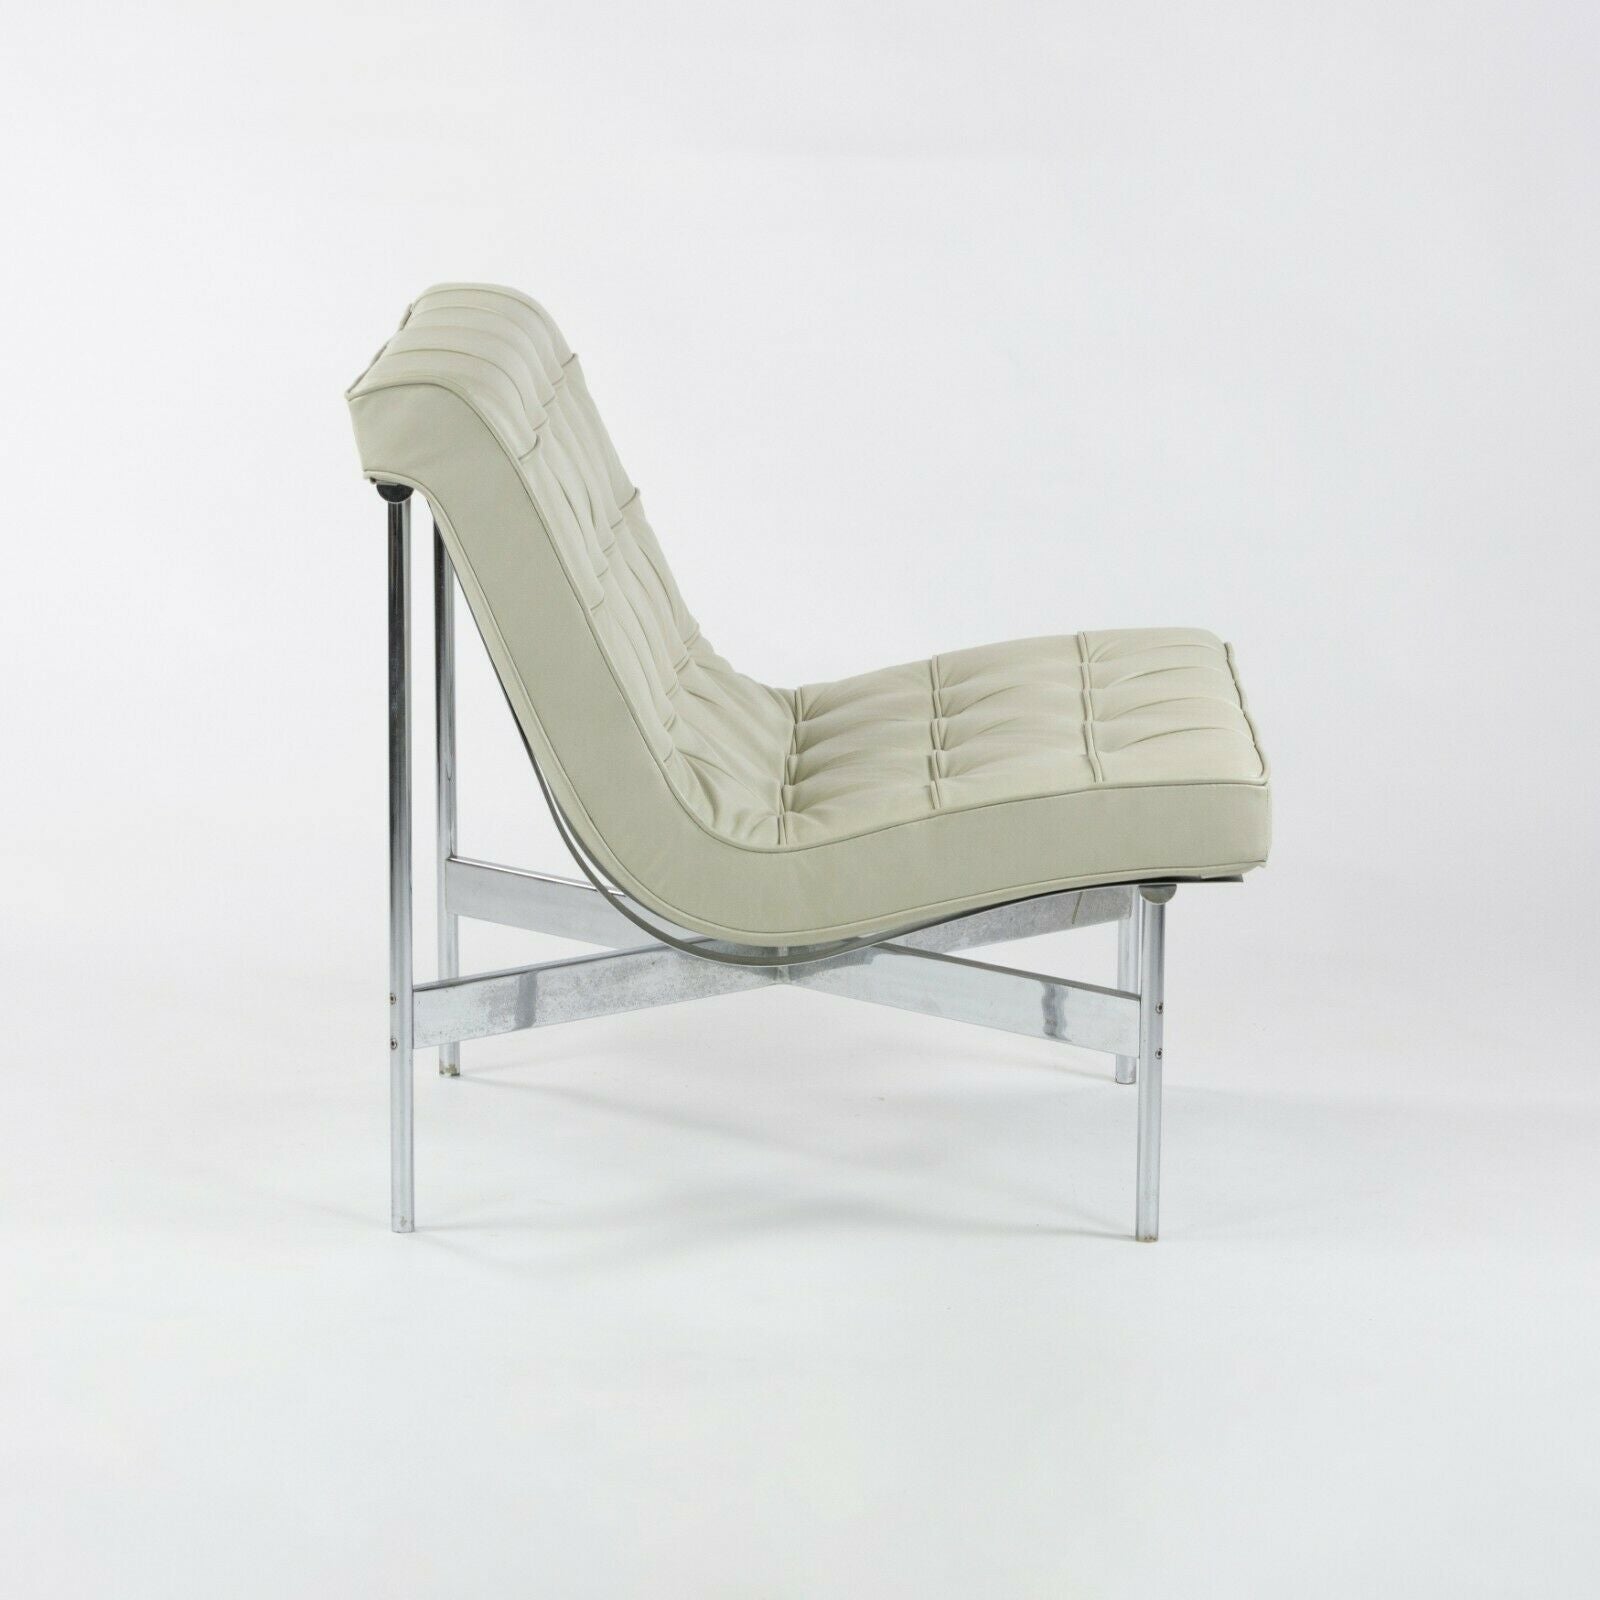 1950s Original Pair Lounge Chairs 5-LC Lounge Chairs Katavolos Estelle Laverne